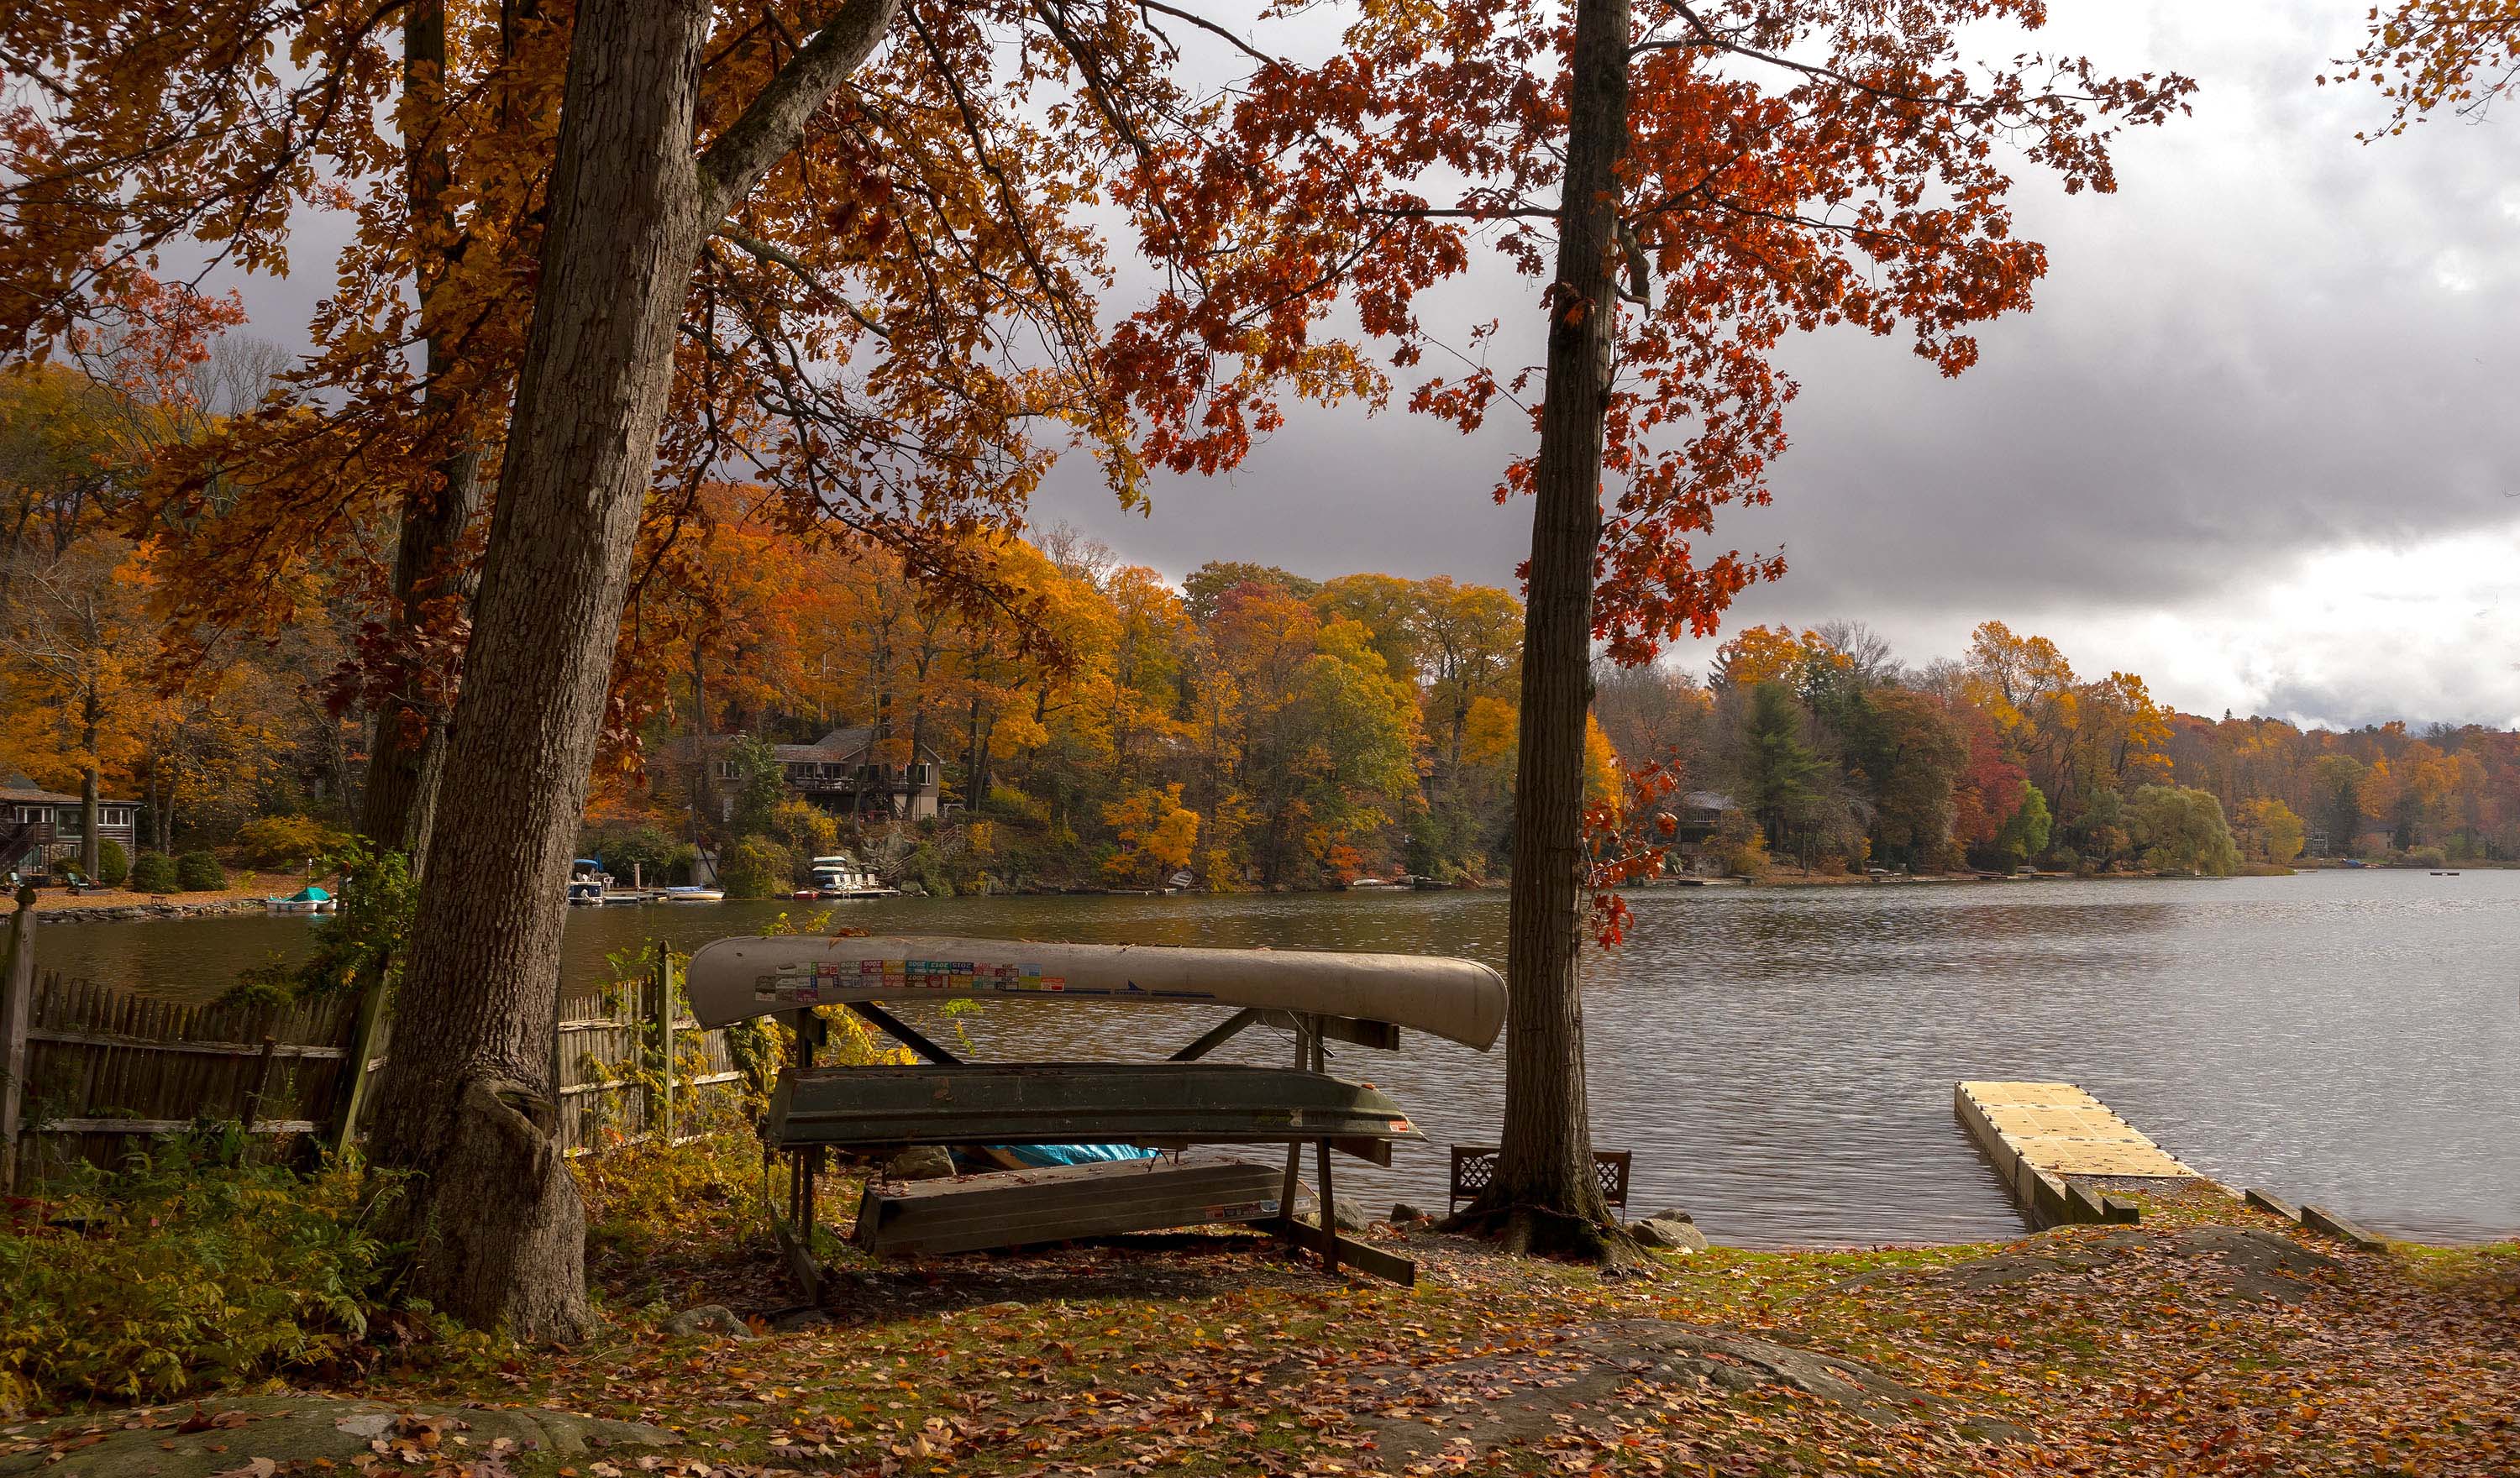 природа,осень,пейзаж,деревья,отражения,озеро,вода,листья,лодки,, Антонина Яновска